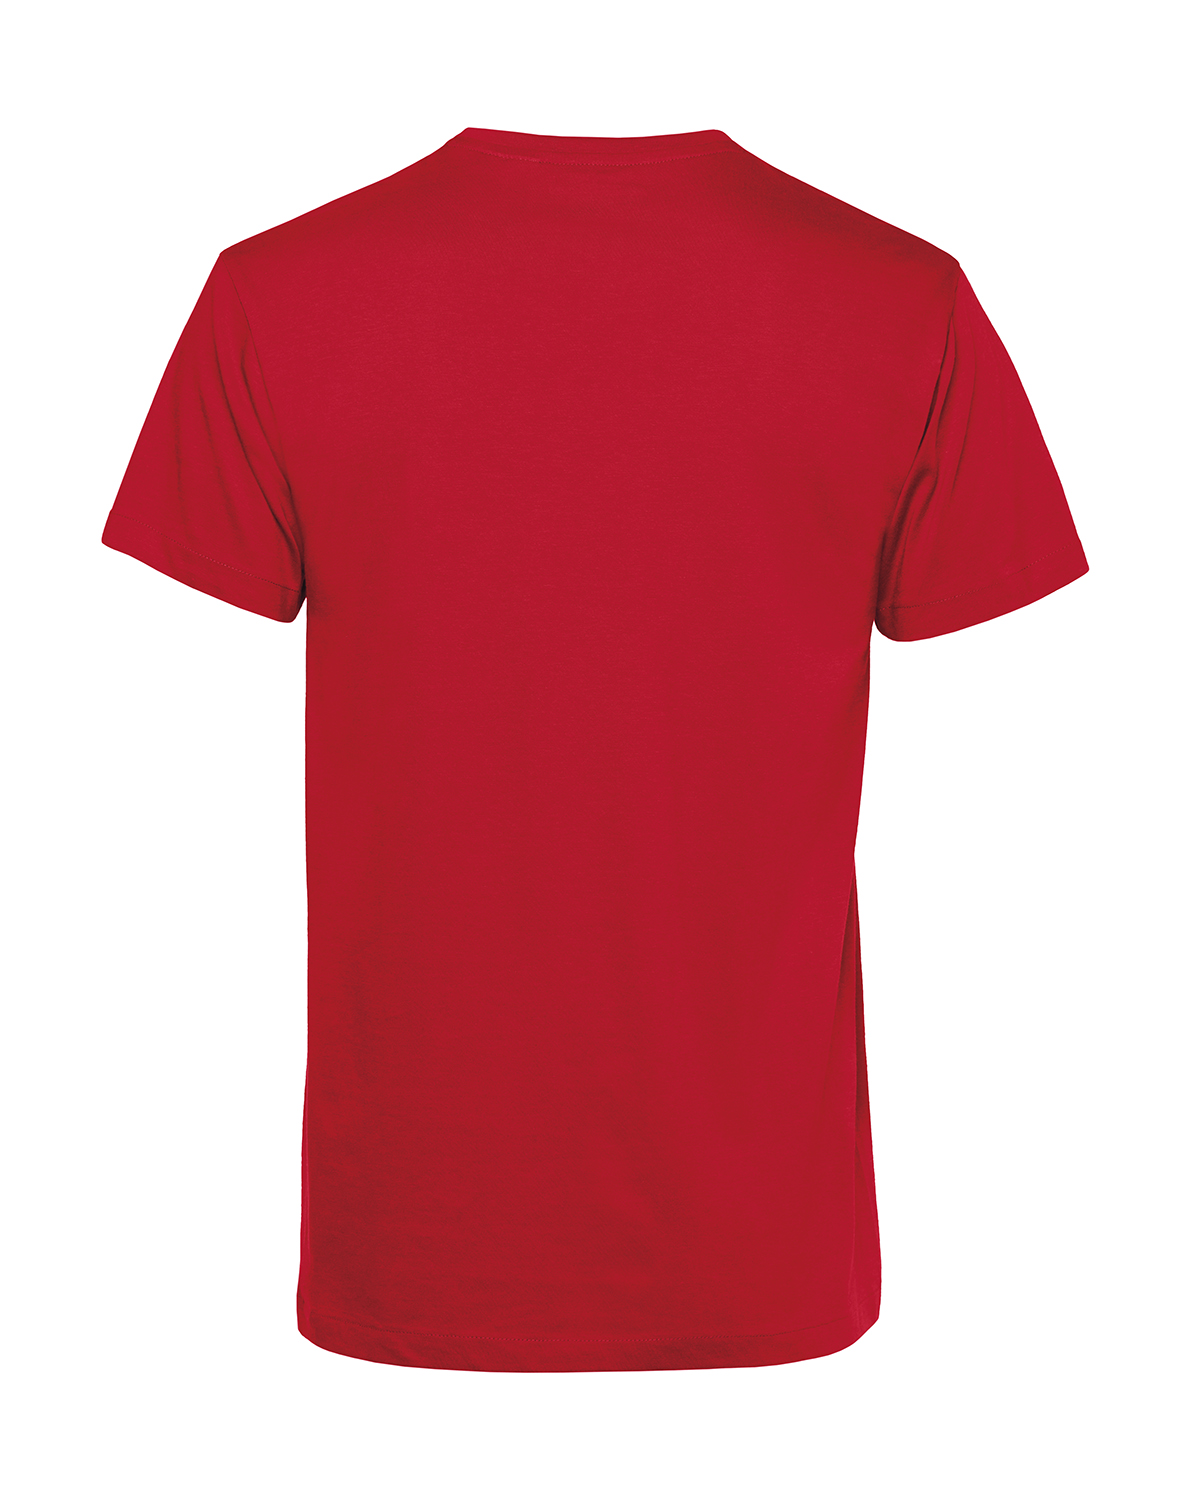 Nachhaltiges T-Shirt Herren 2Takter - Luftgekühlt Schwalbe